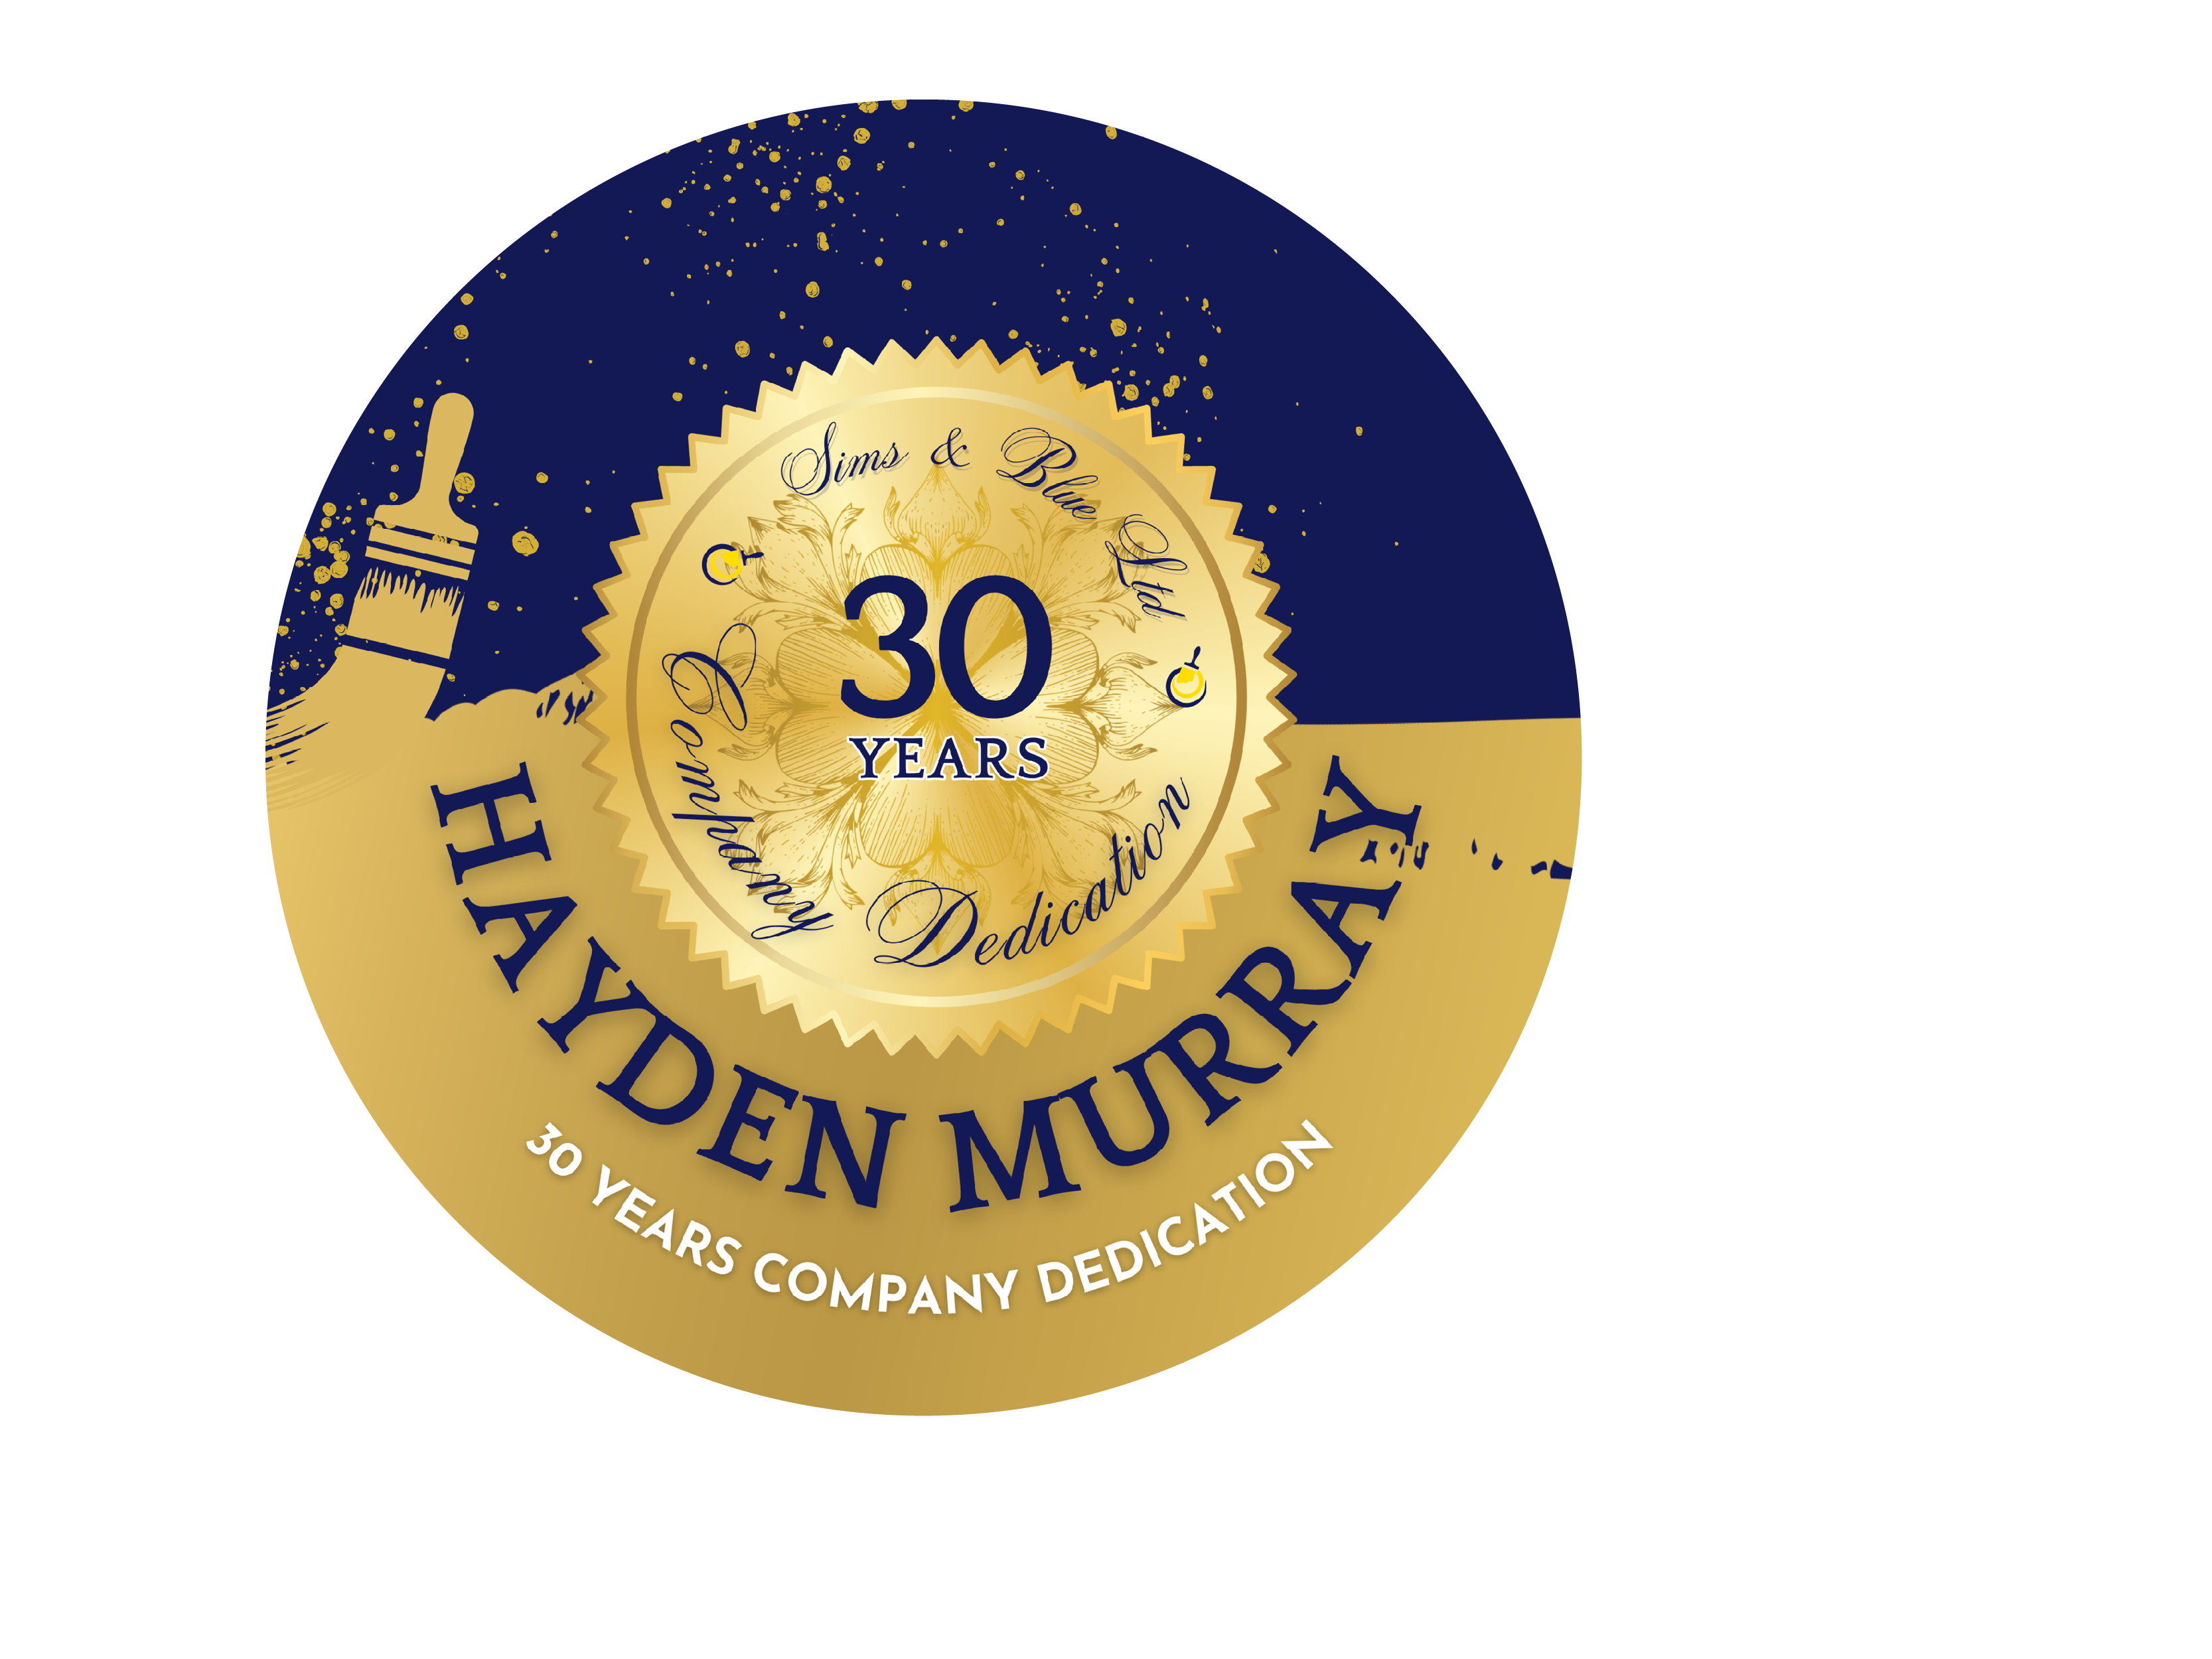 Badge, 30 Year Company Dedication, Hayden Murray